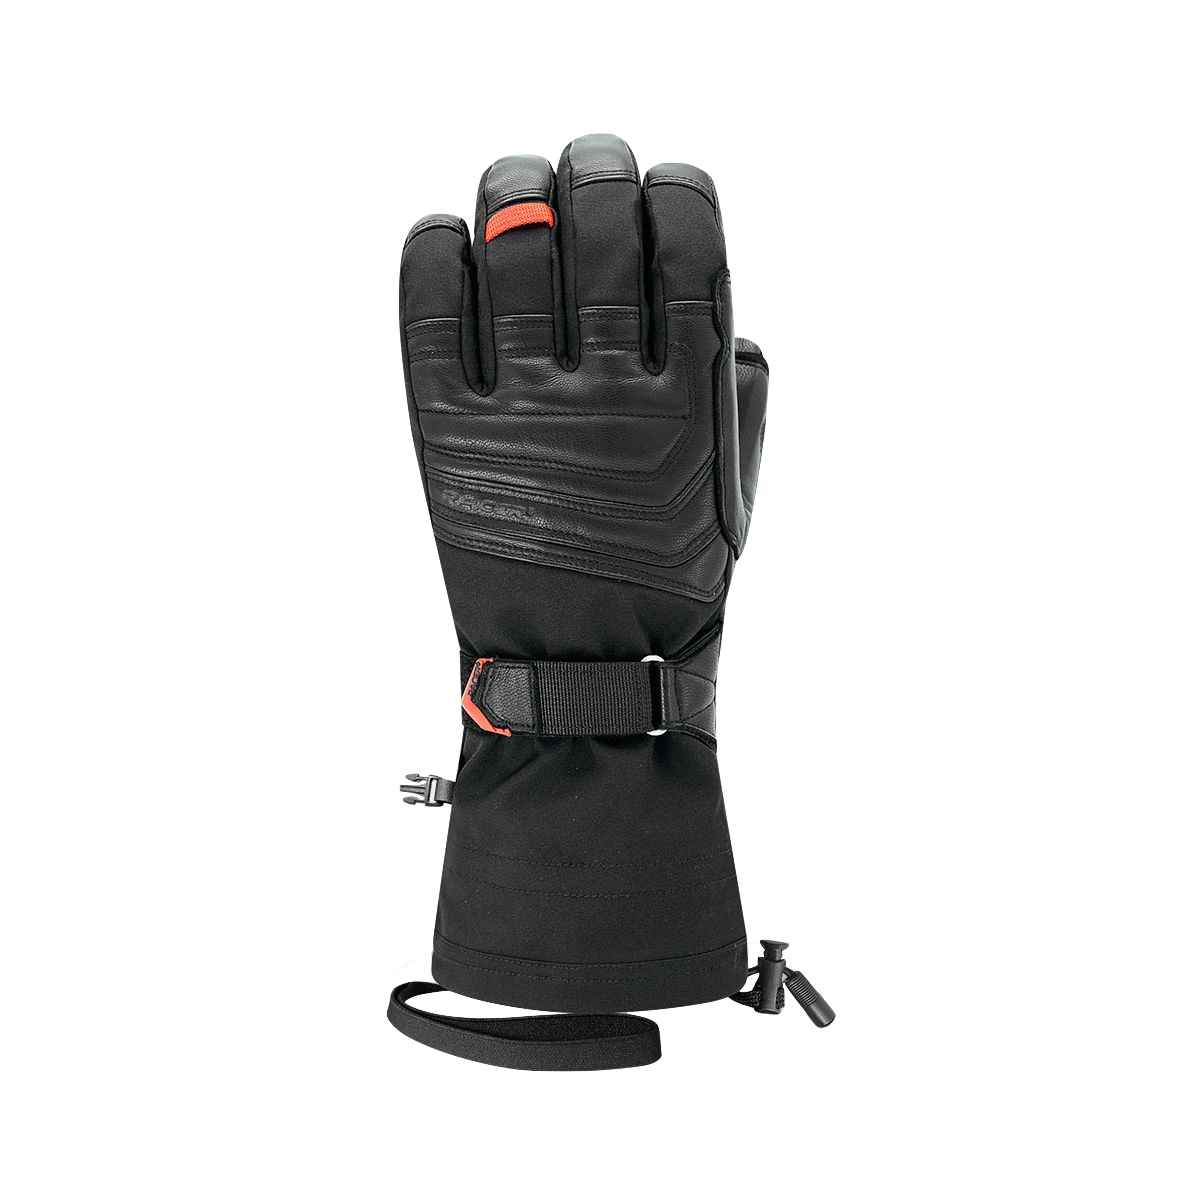 Racer Guide Pro G - Gloves - Men's